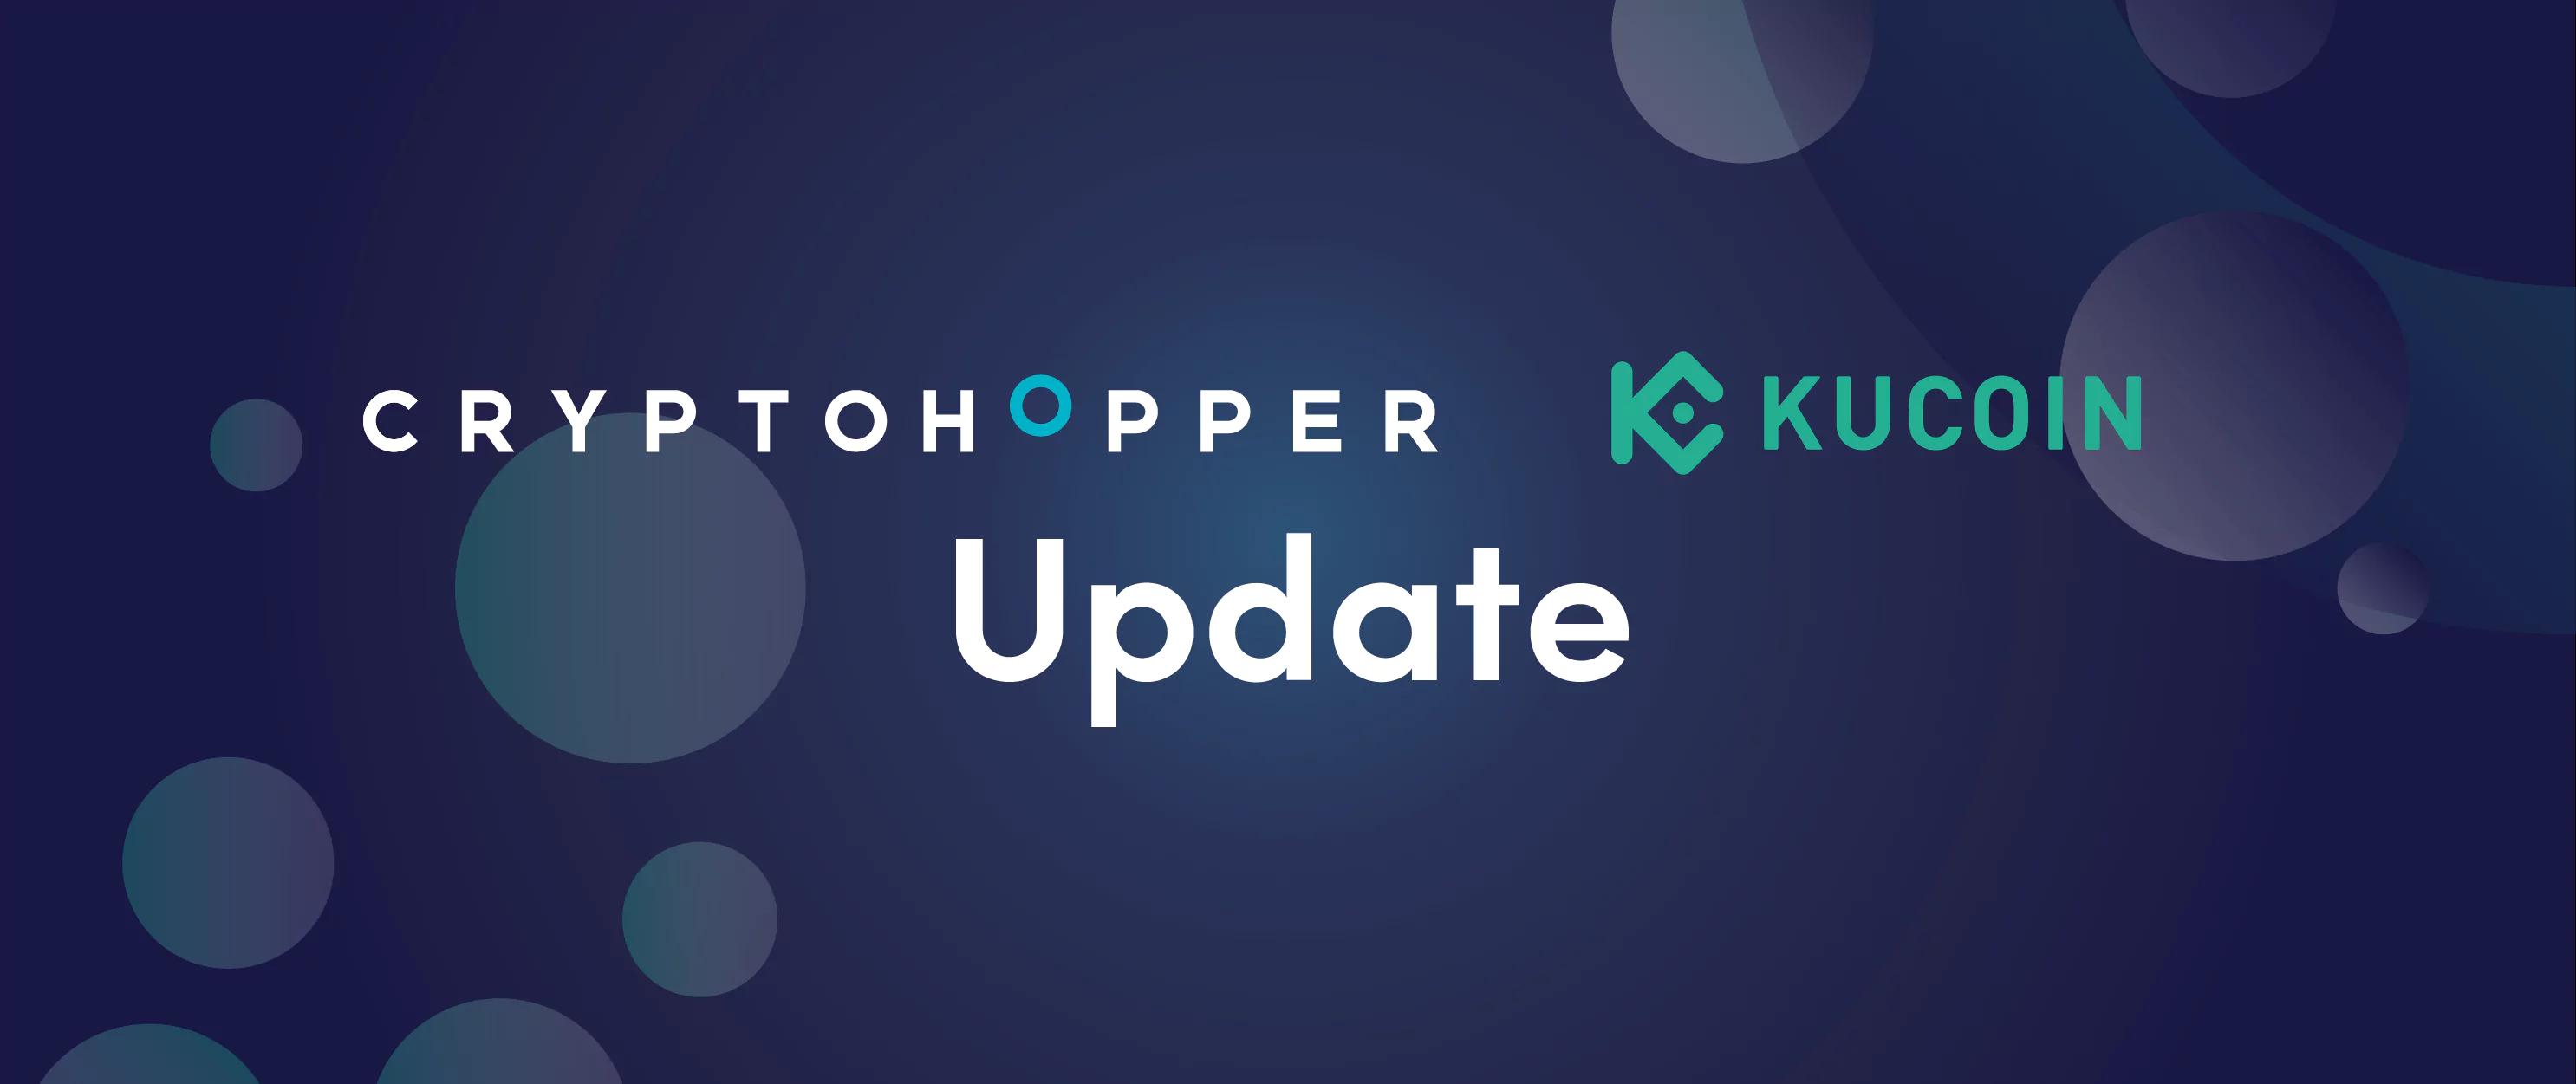 KuCoin added to Cryptohopper